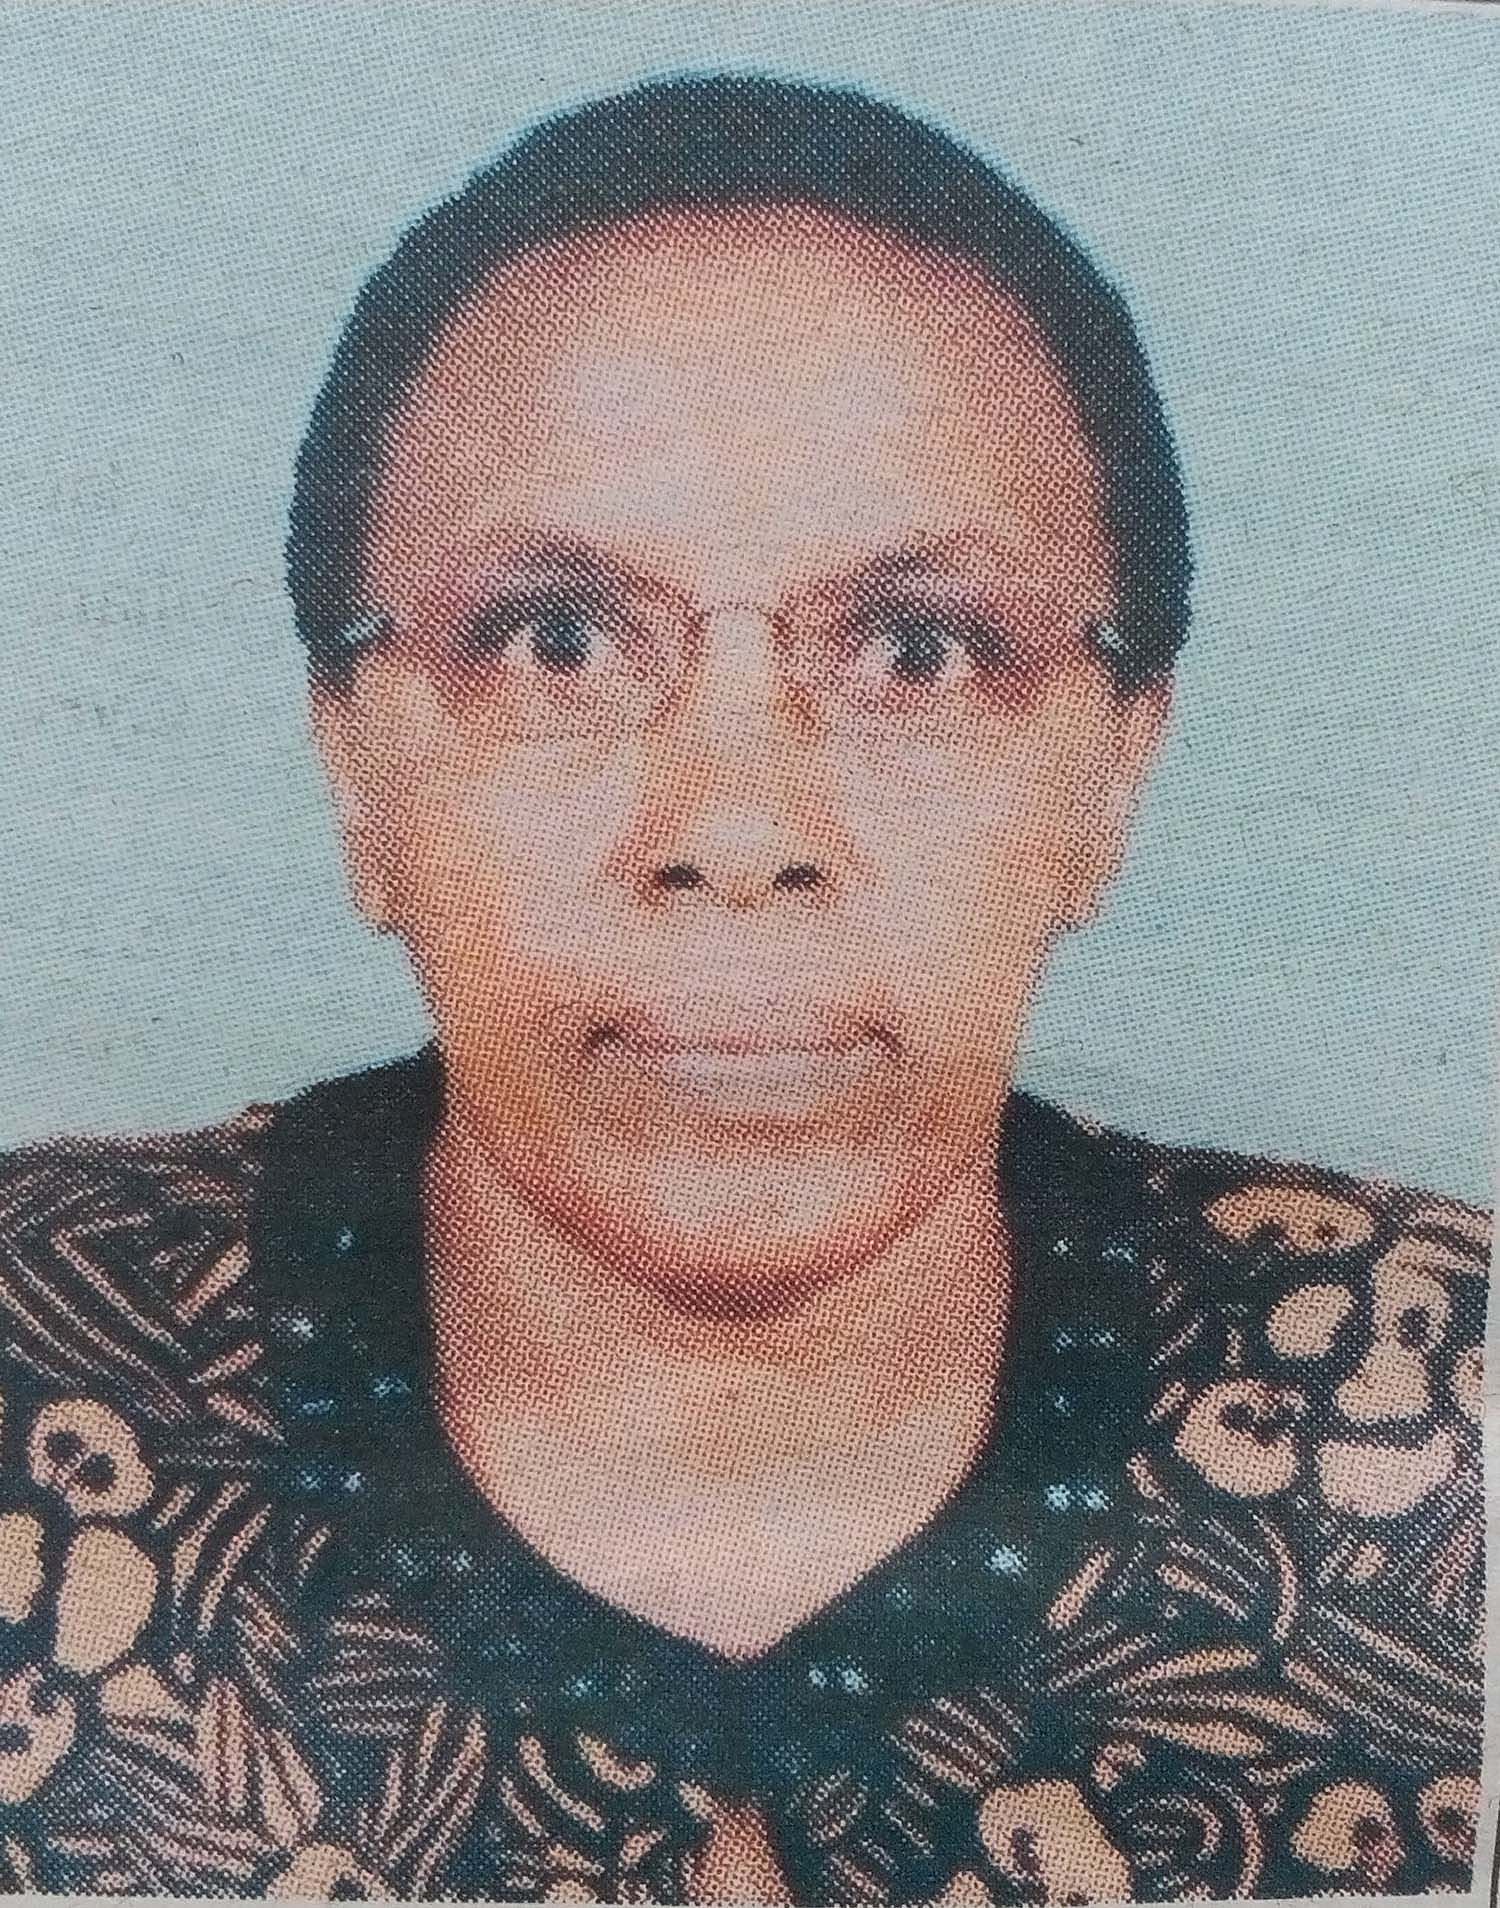 Obituary Image of Elder, Mrs. Purity Wangui Gikuhi